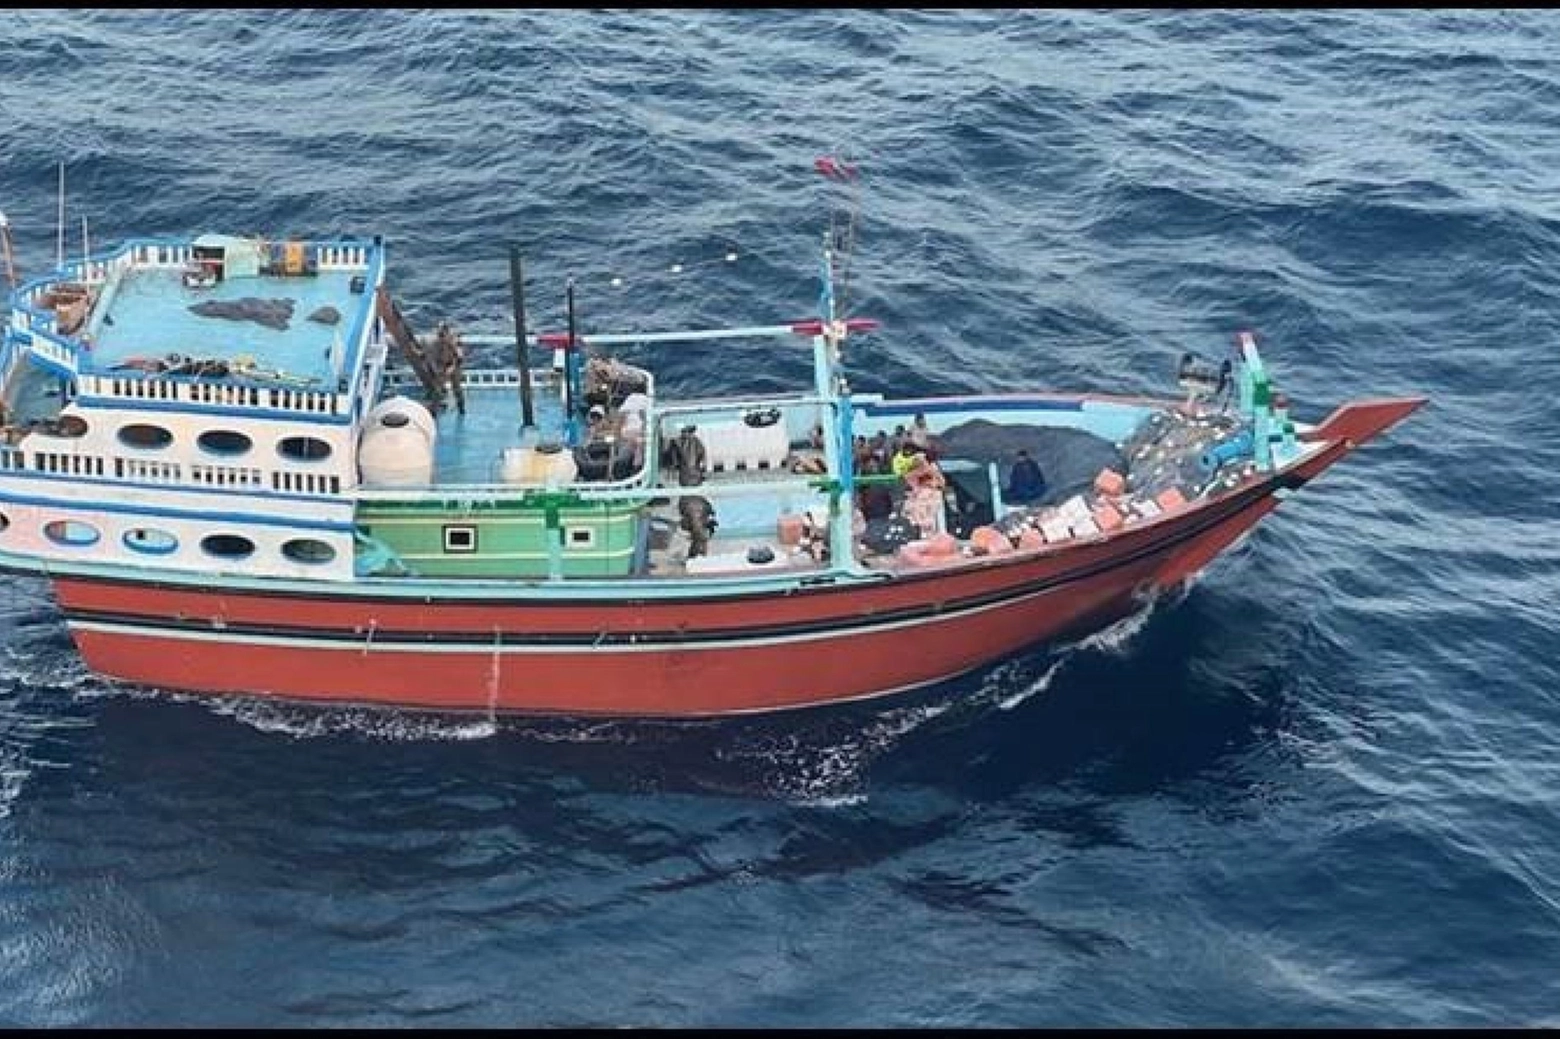 Un dau come l'imbarcazione assaltata dai Navy seal per sequestrare i missili inviati dall'Iran agli Houthi